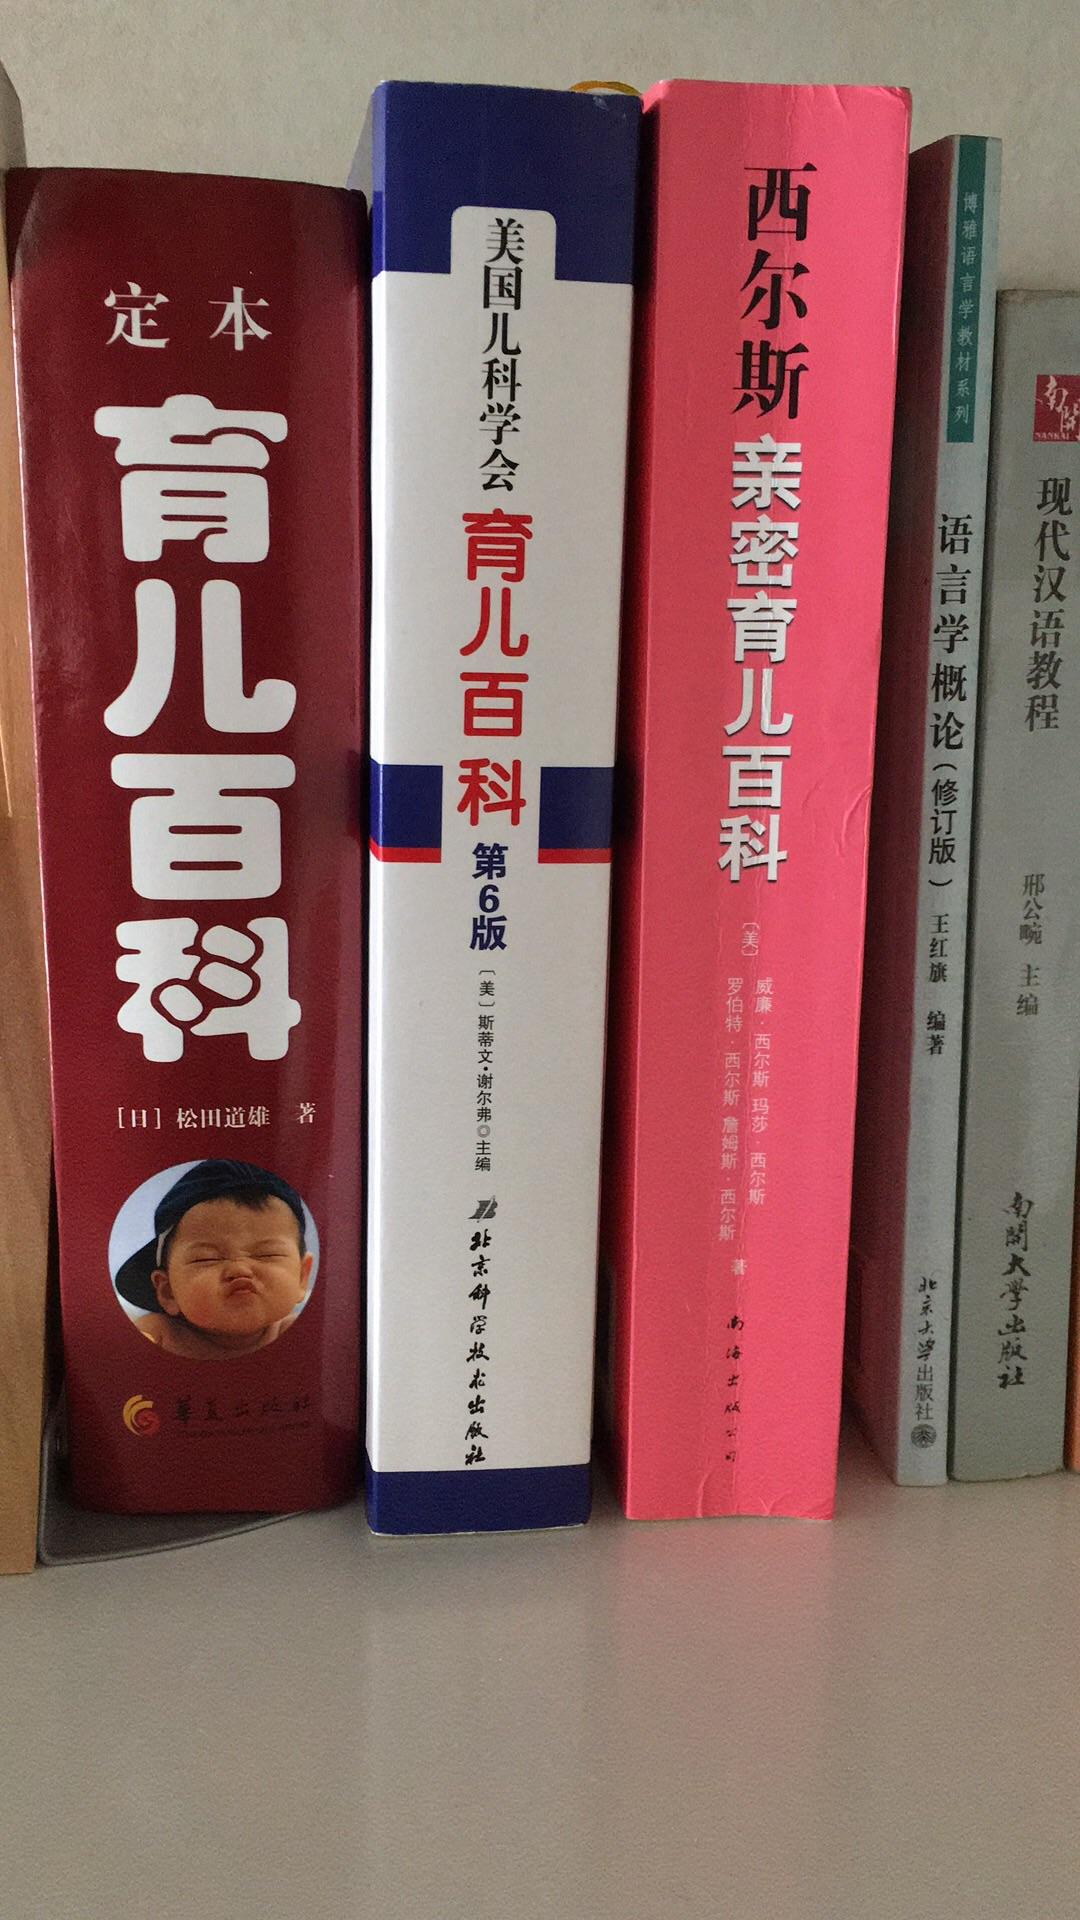 一个初中文化怀孕3个月的孕妇如何做一些对自